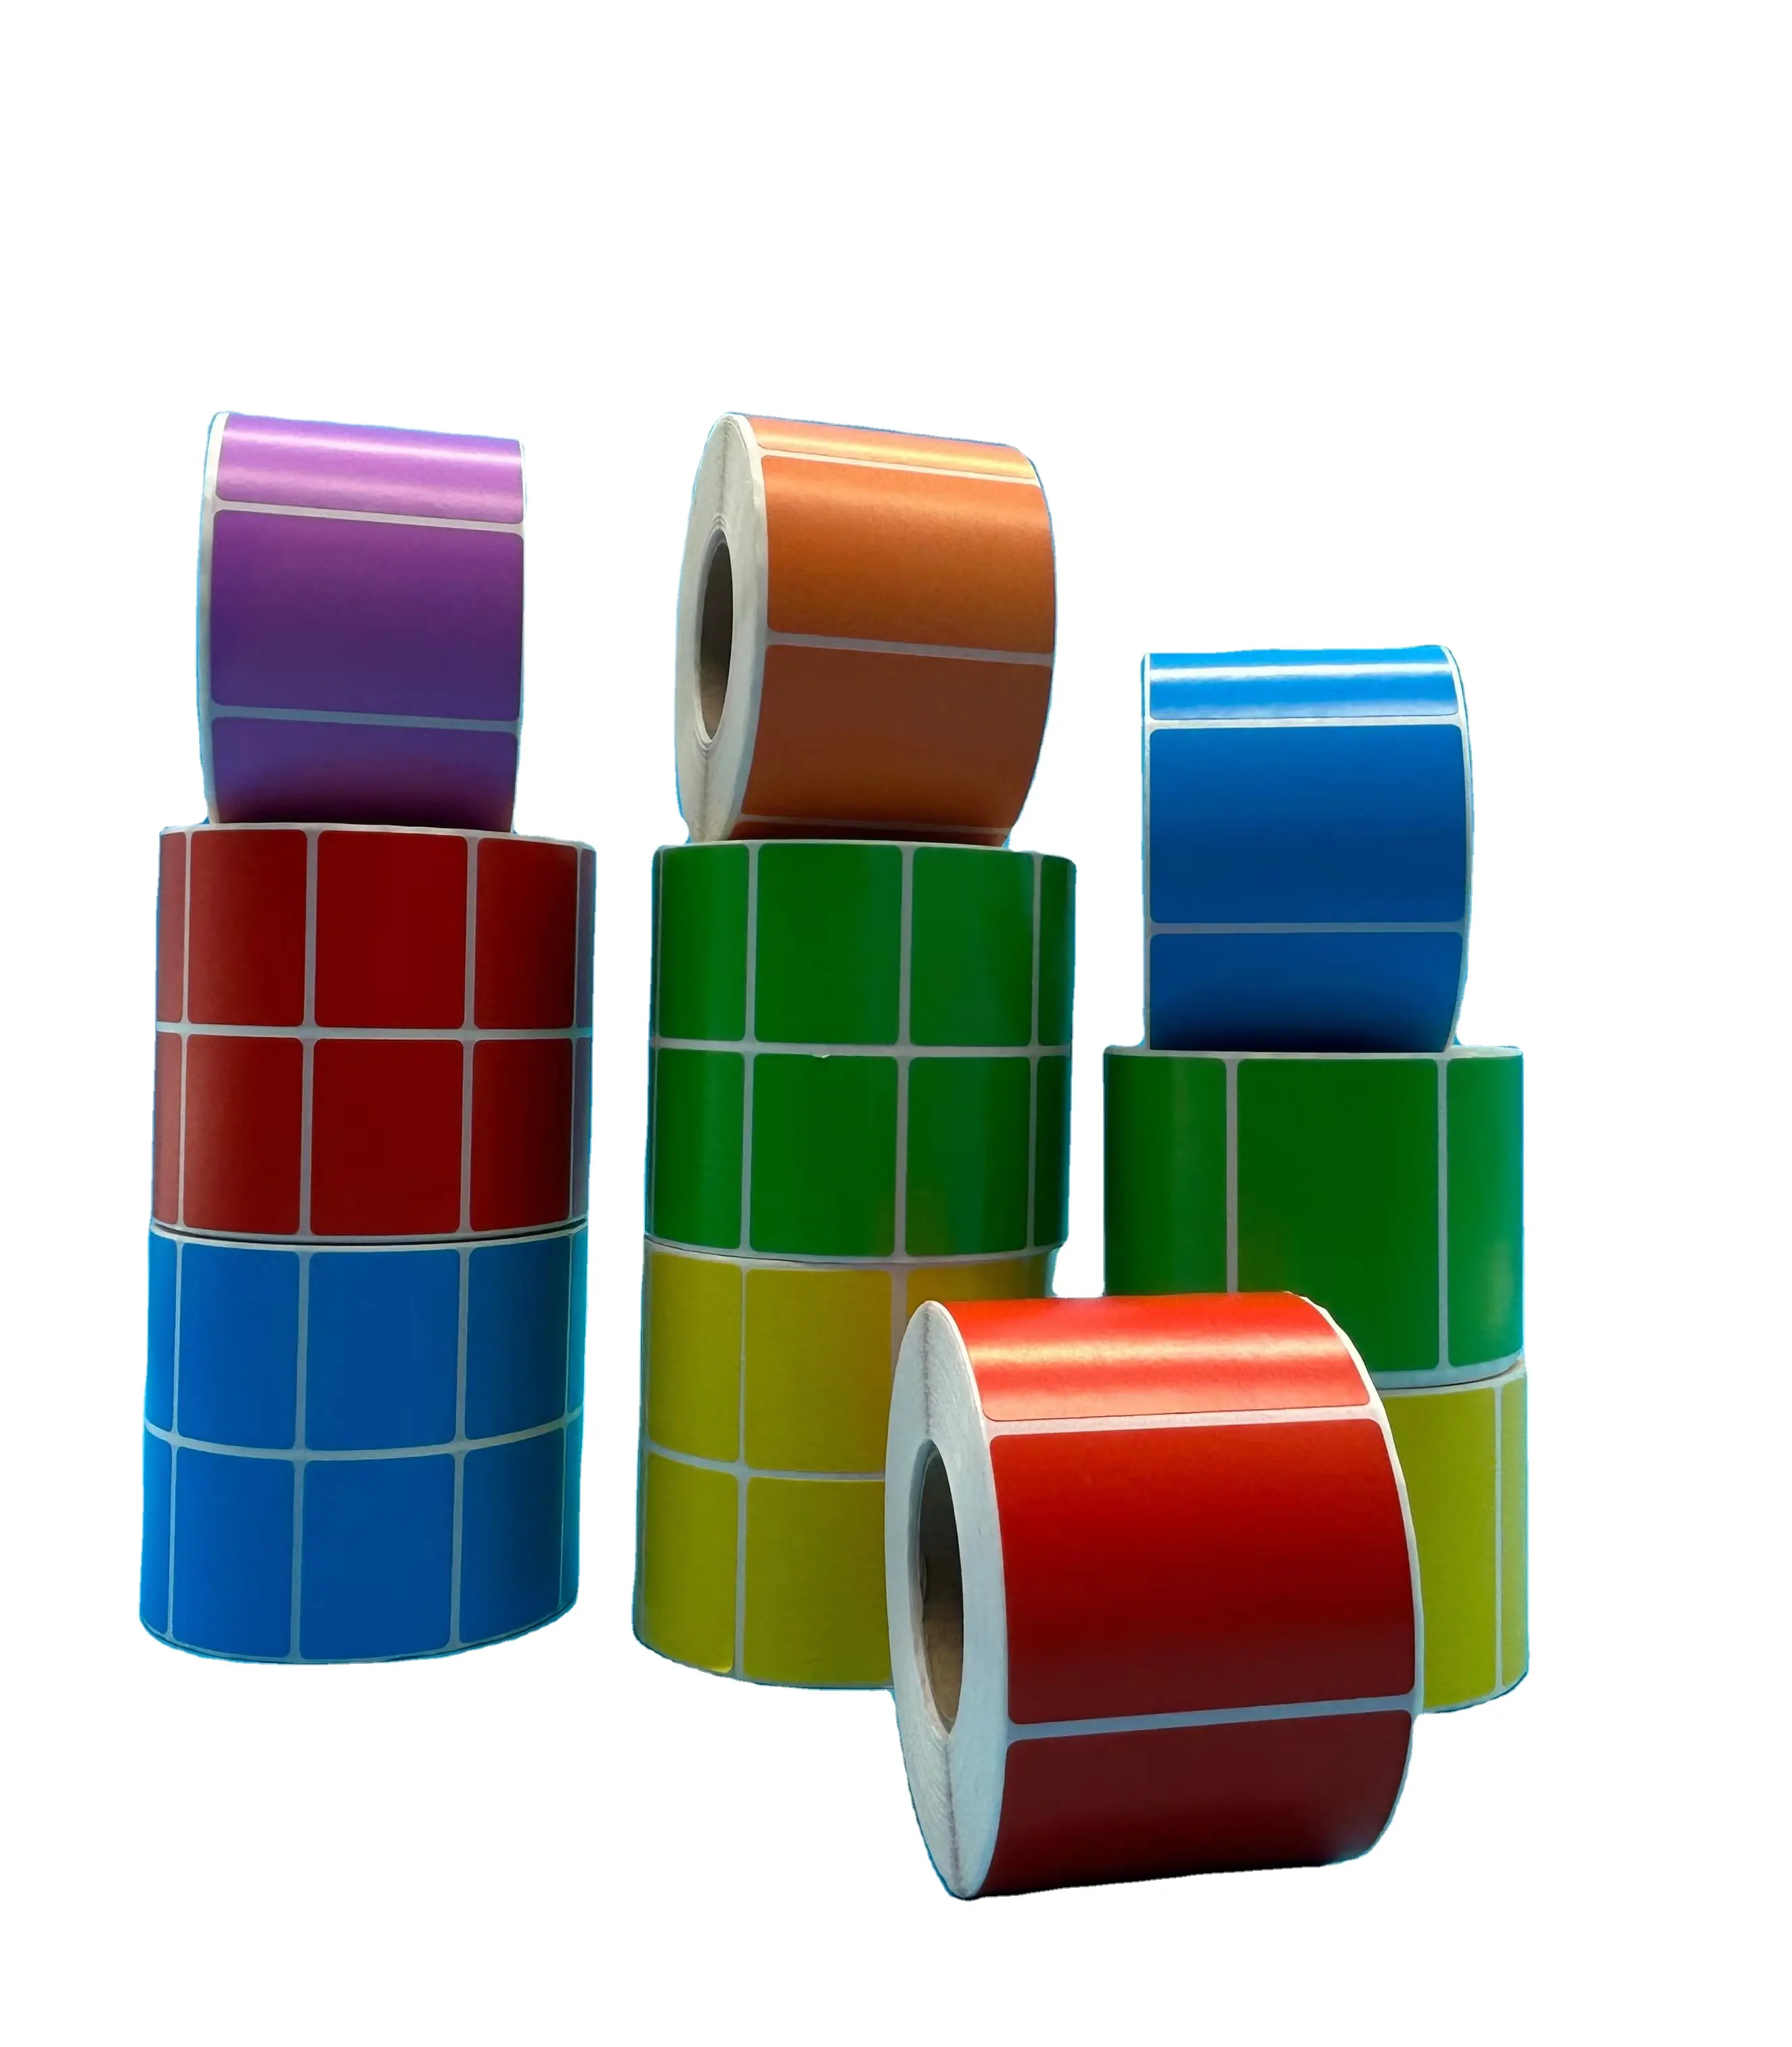 Rolo de papel térmico personalizado para etiquetas e postagens, etiqueta térmica colorida de alta qualidade com código de barras, tamanho 60 mm x 40 mm, 1000 unidades